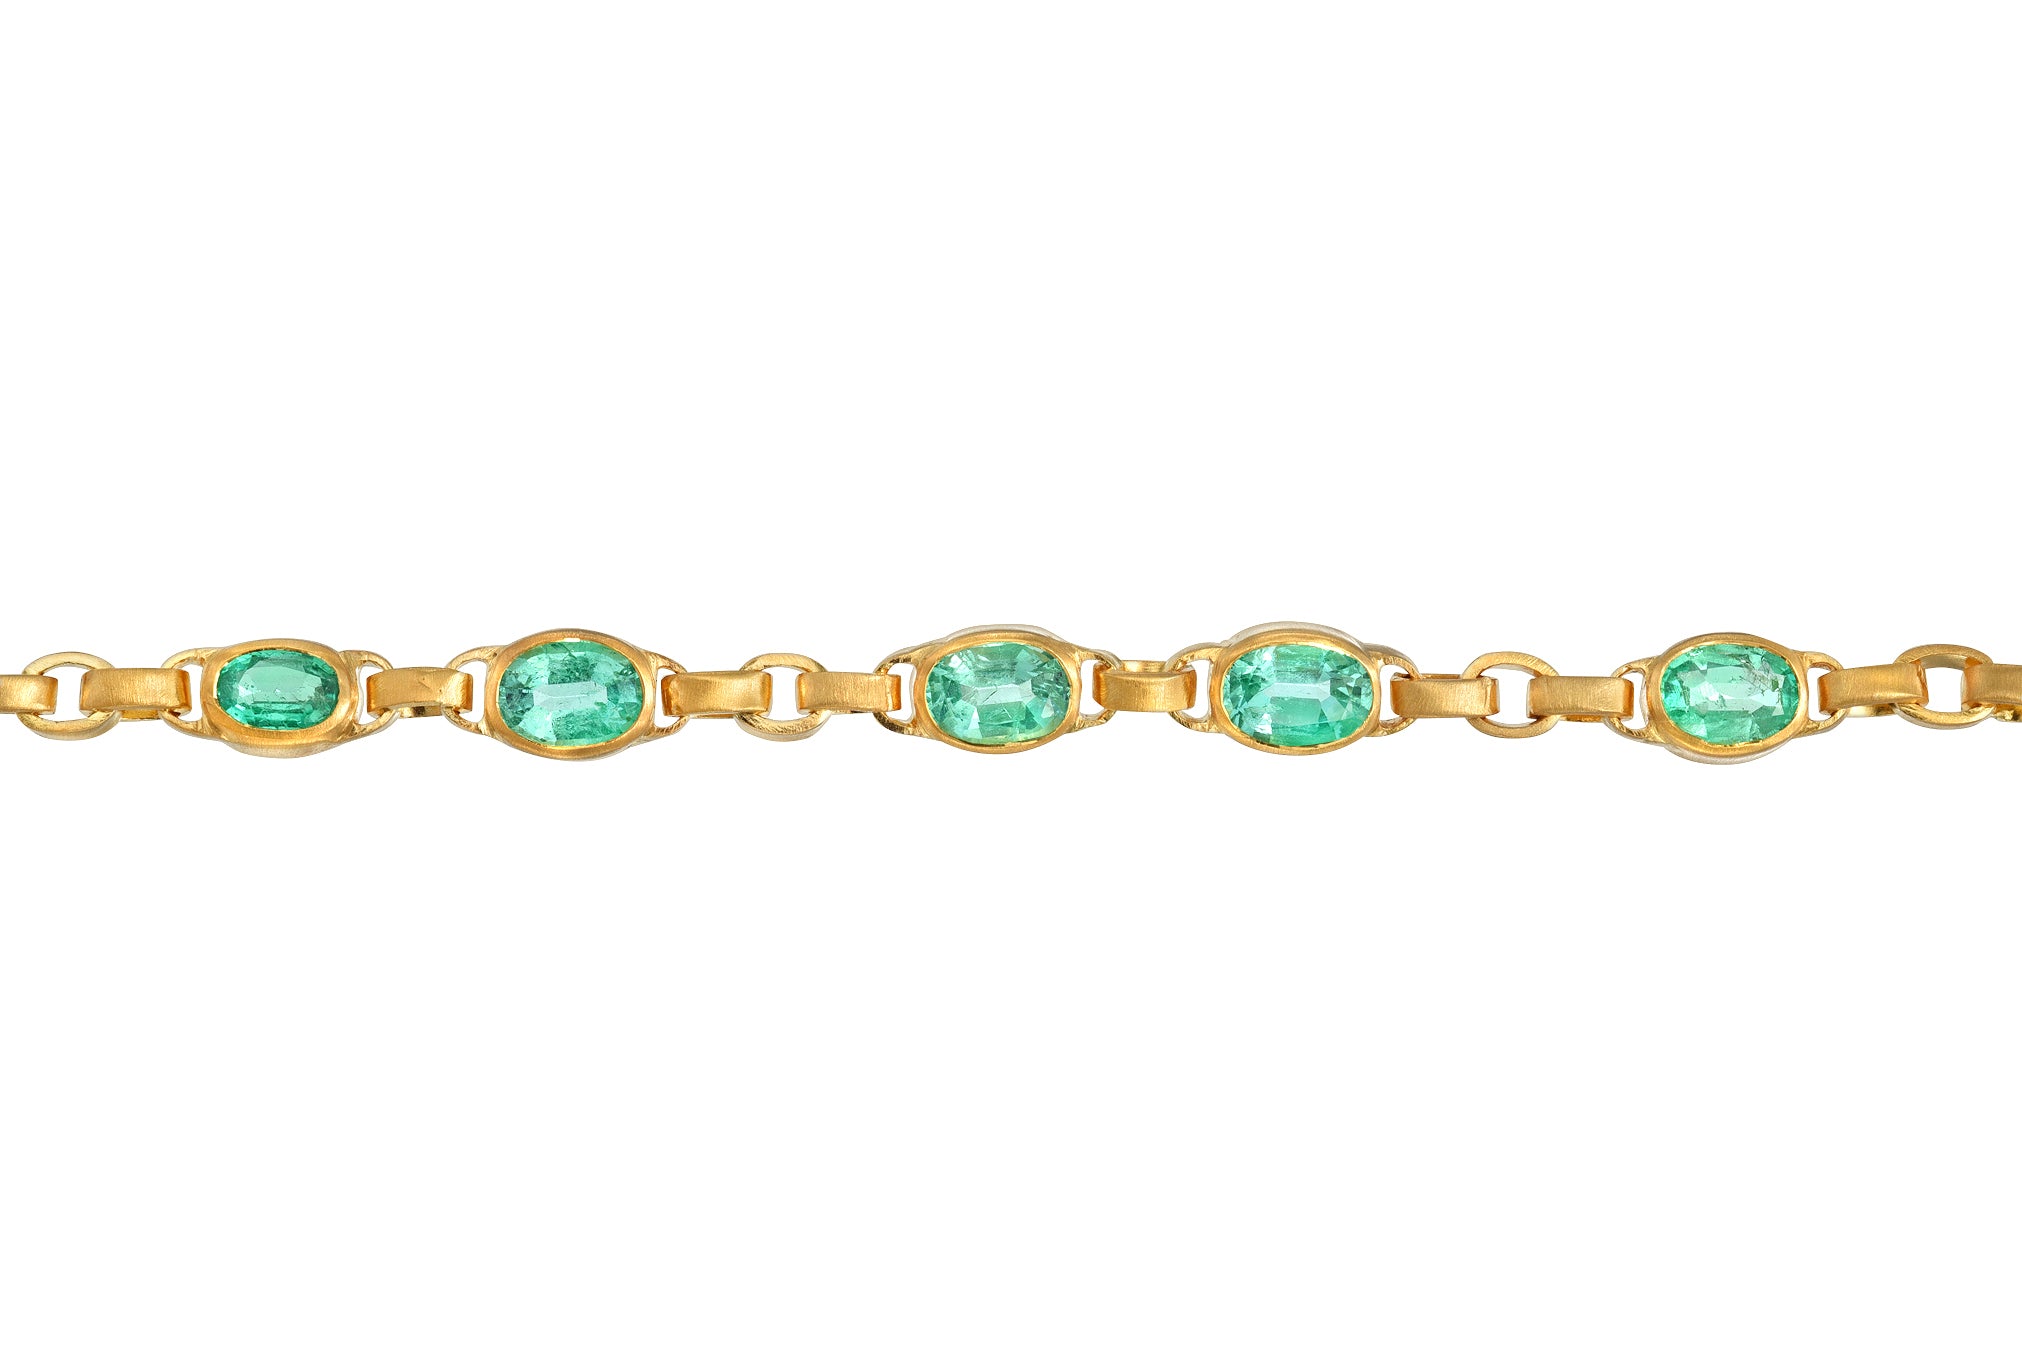 darius jewels darius khonsary mint emerald oval signature chain MUZO Emeralds 18k yellow gold